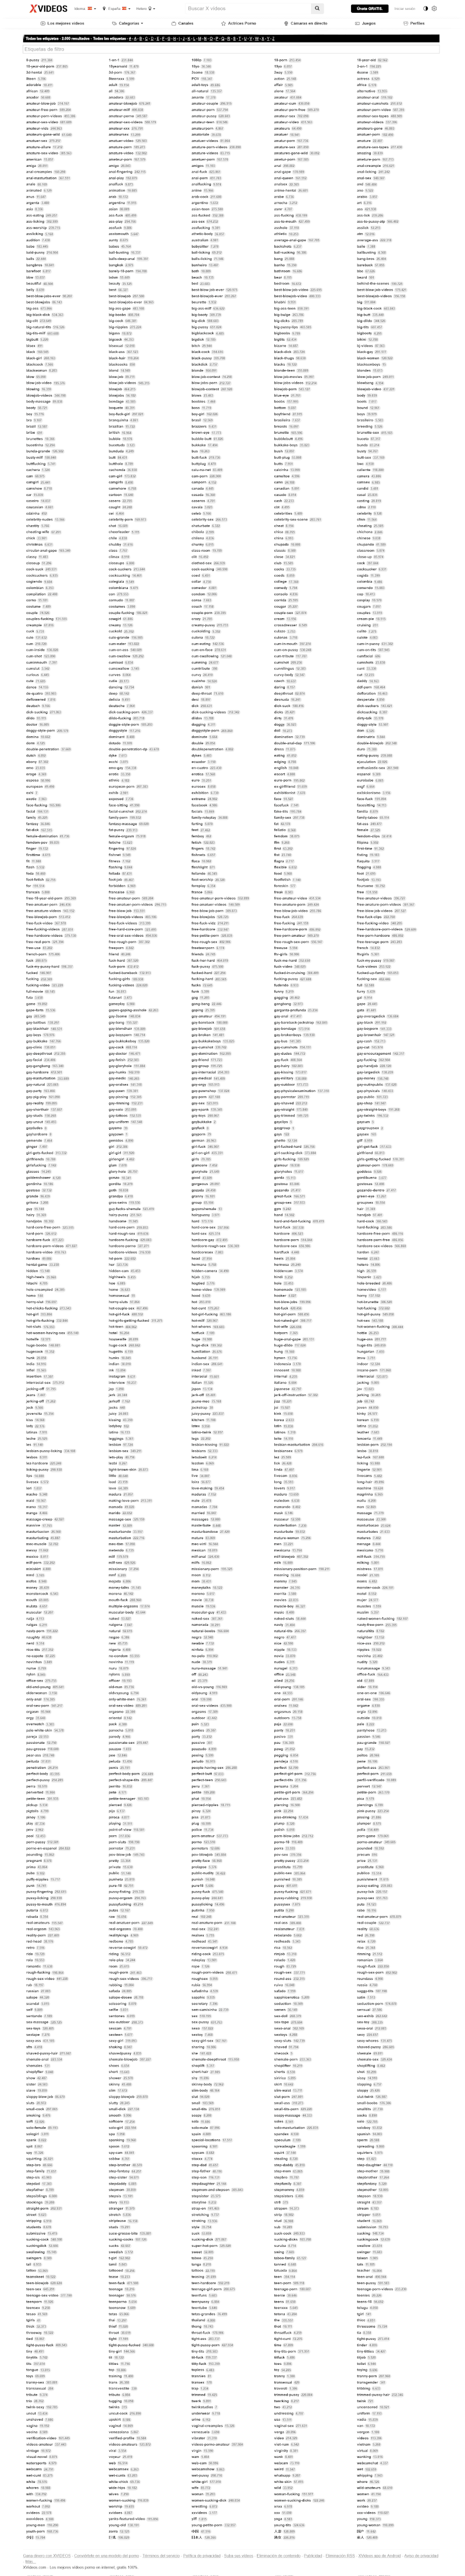 Captura de pantalla del listado completo de etiquetas del portal Xvideos, con la cantidad de contenidos en cada una. Imagen para hacer una idea de cuánto porno hay en Internet de forma cuantificada.